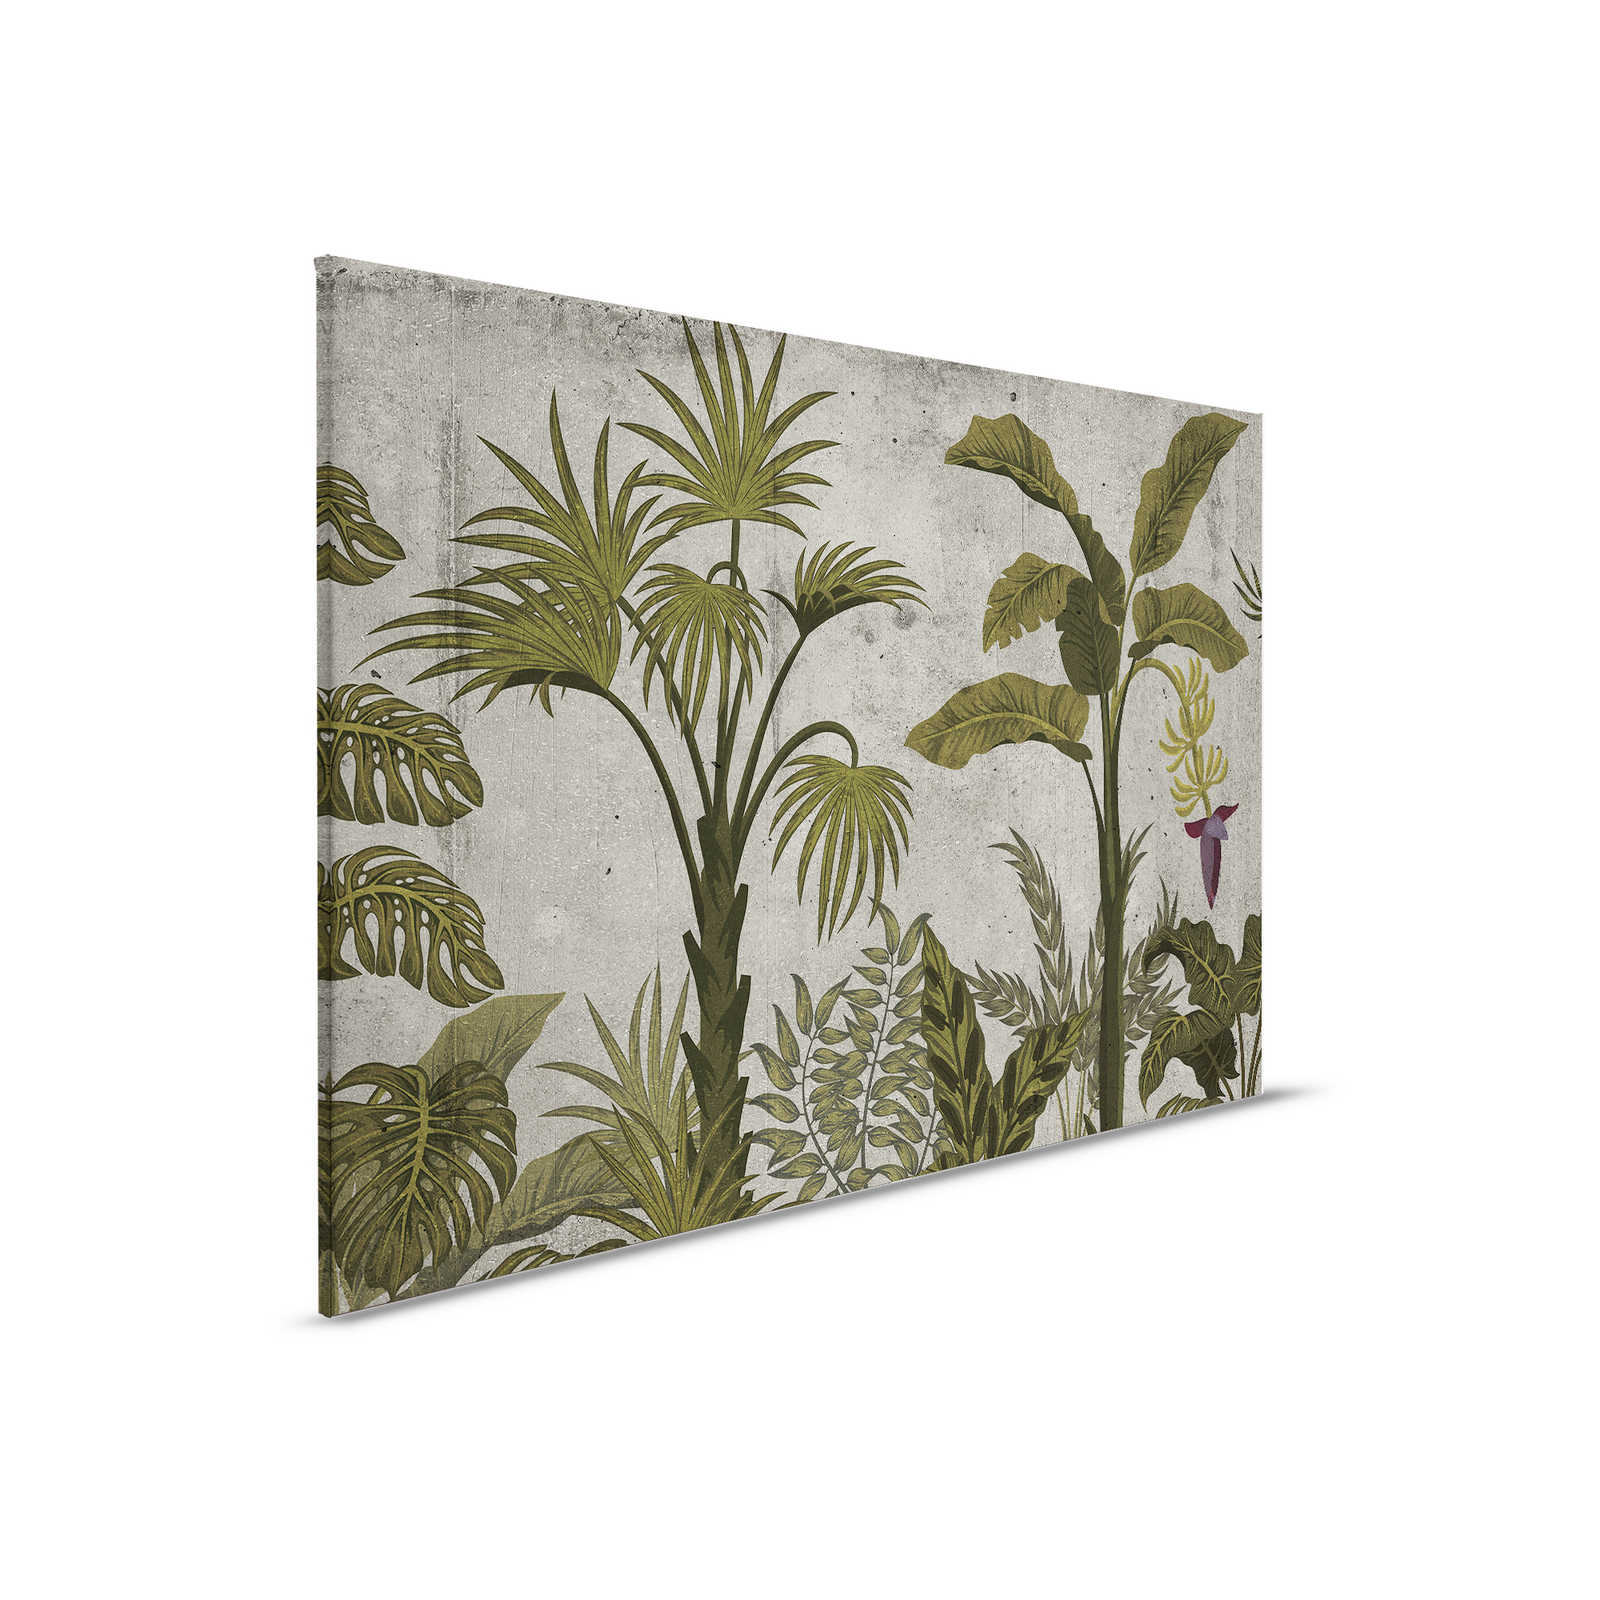 Quadro su tela con paesaggio tropicale su sfondo in cemento - 0,90 m x 0,60 m
